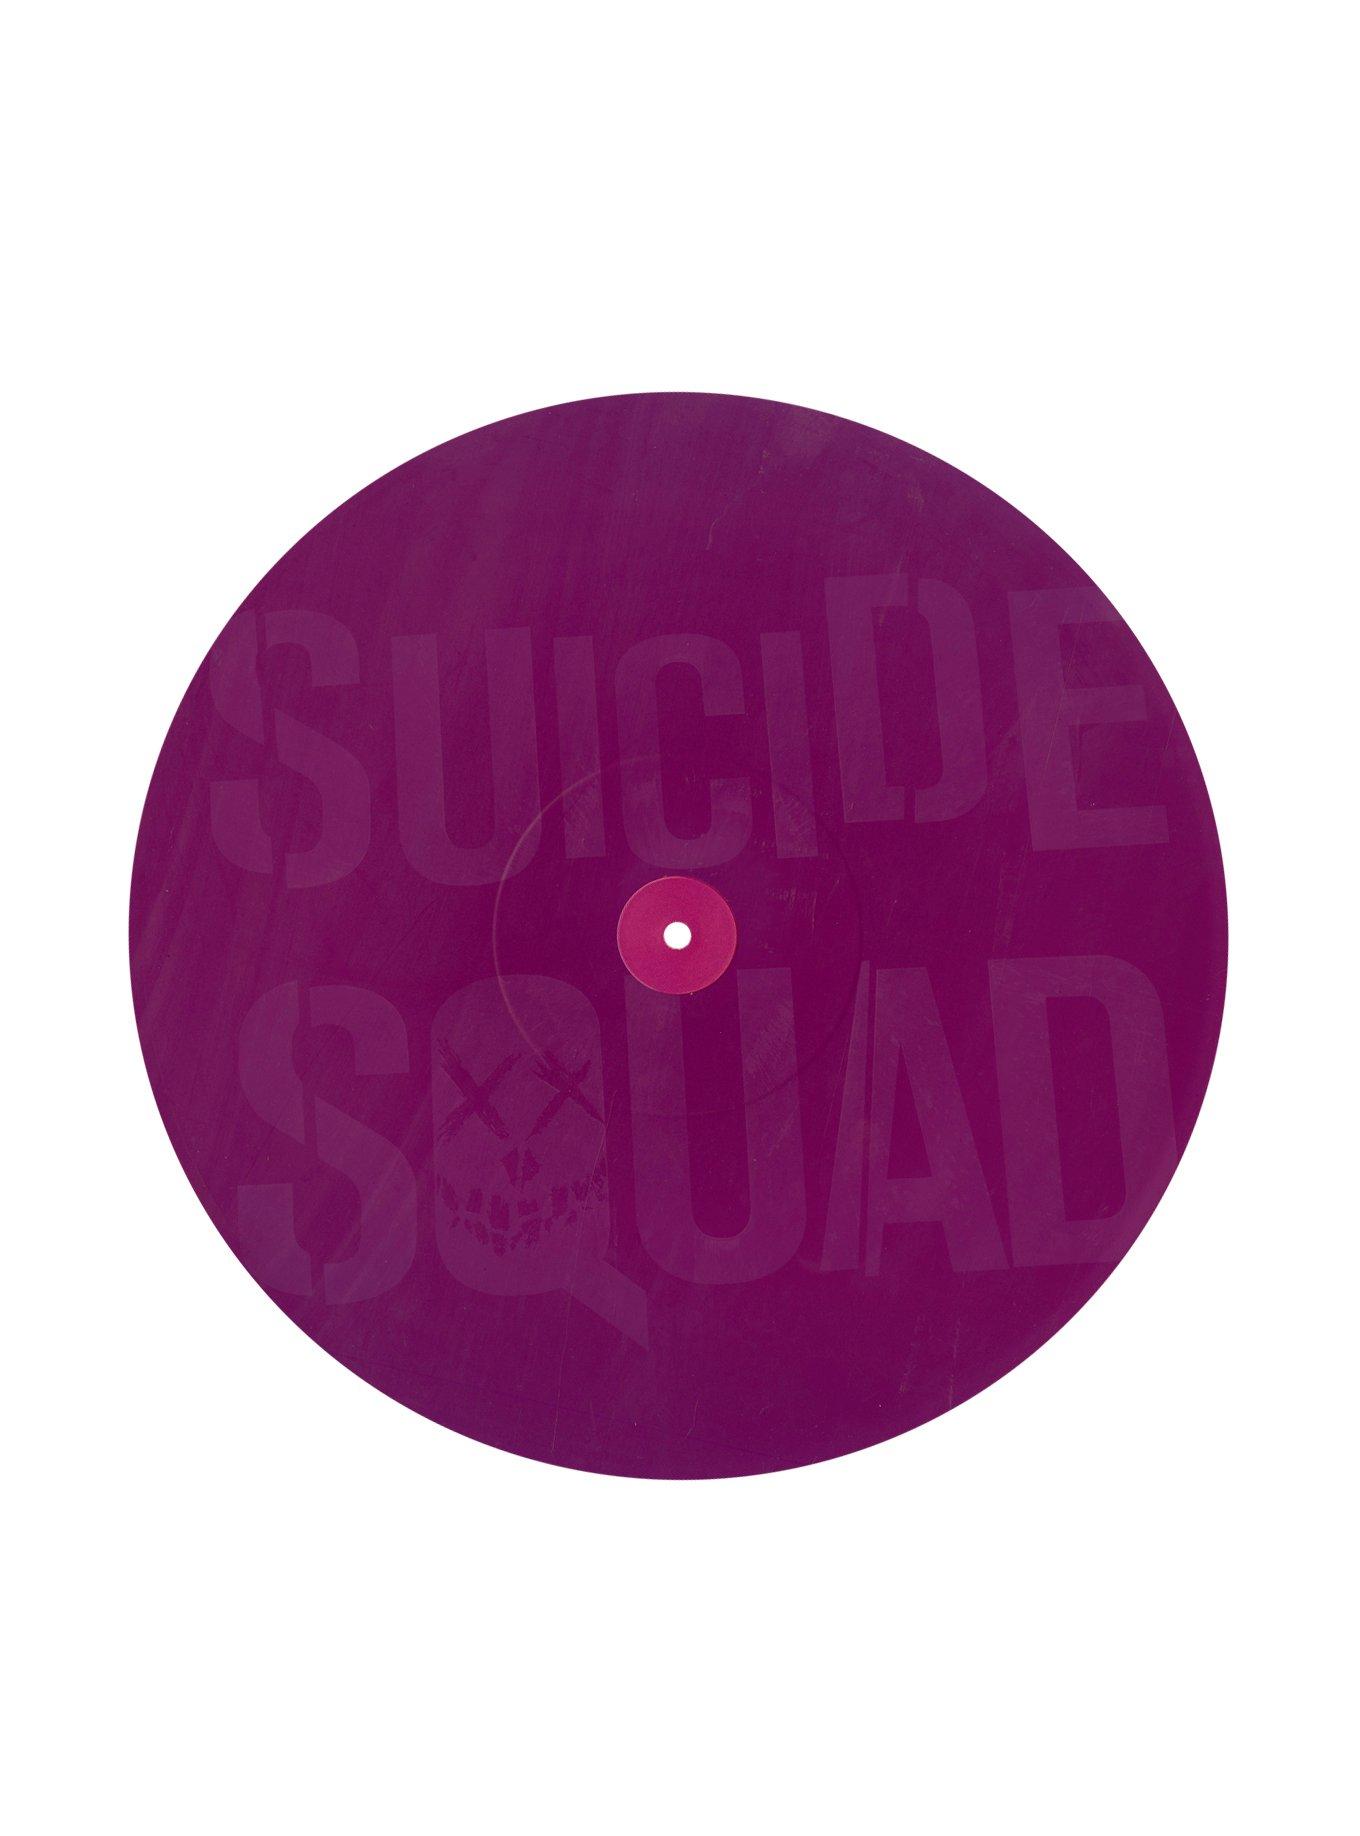 Suicide Squad The Album Vinyl LP Hot Topic Exclusive